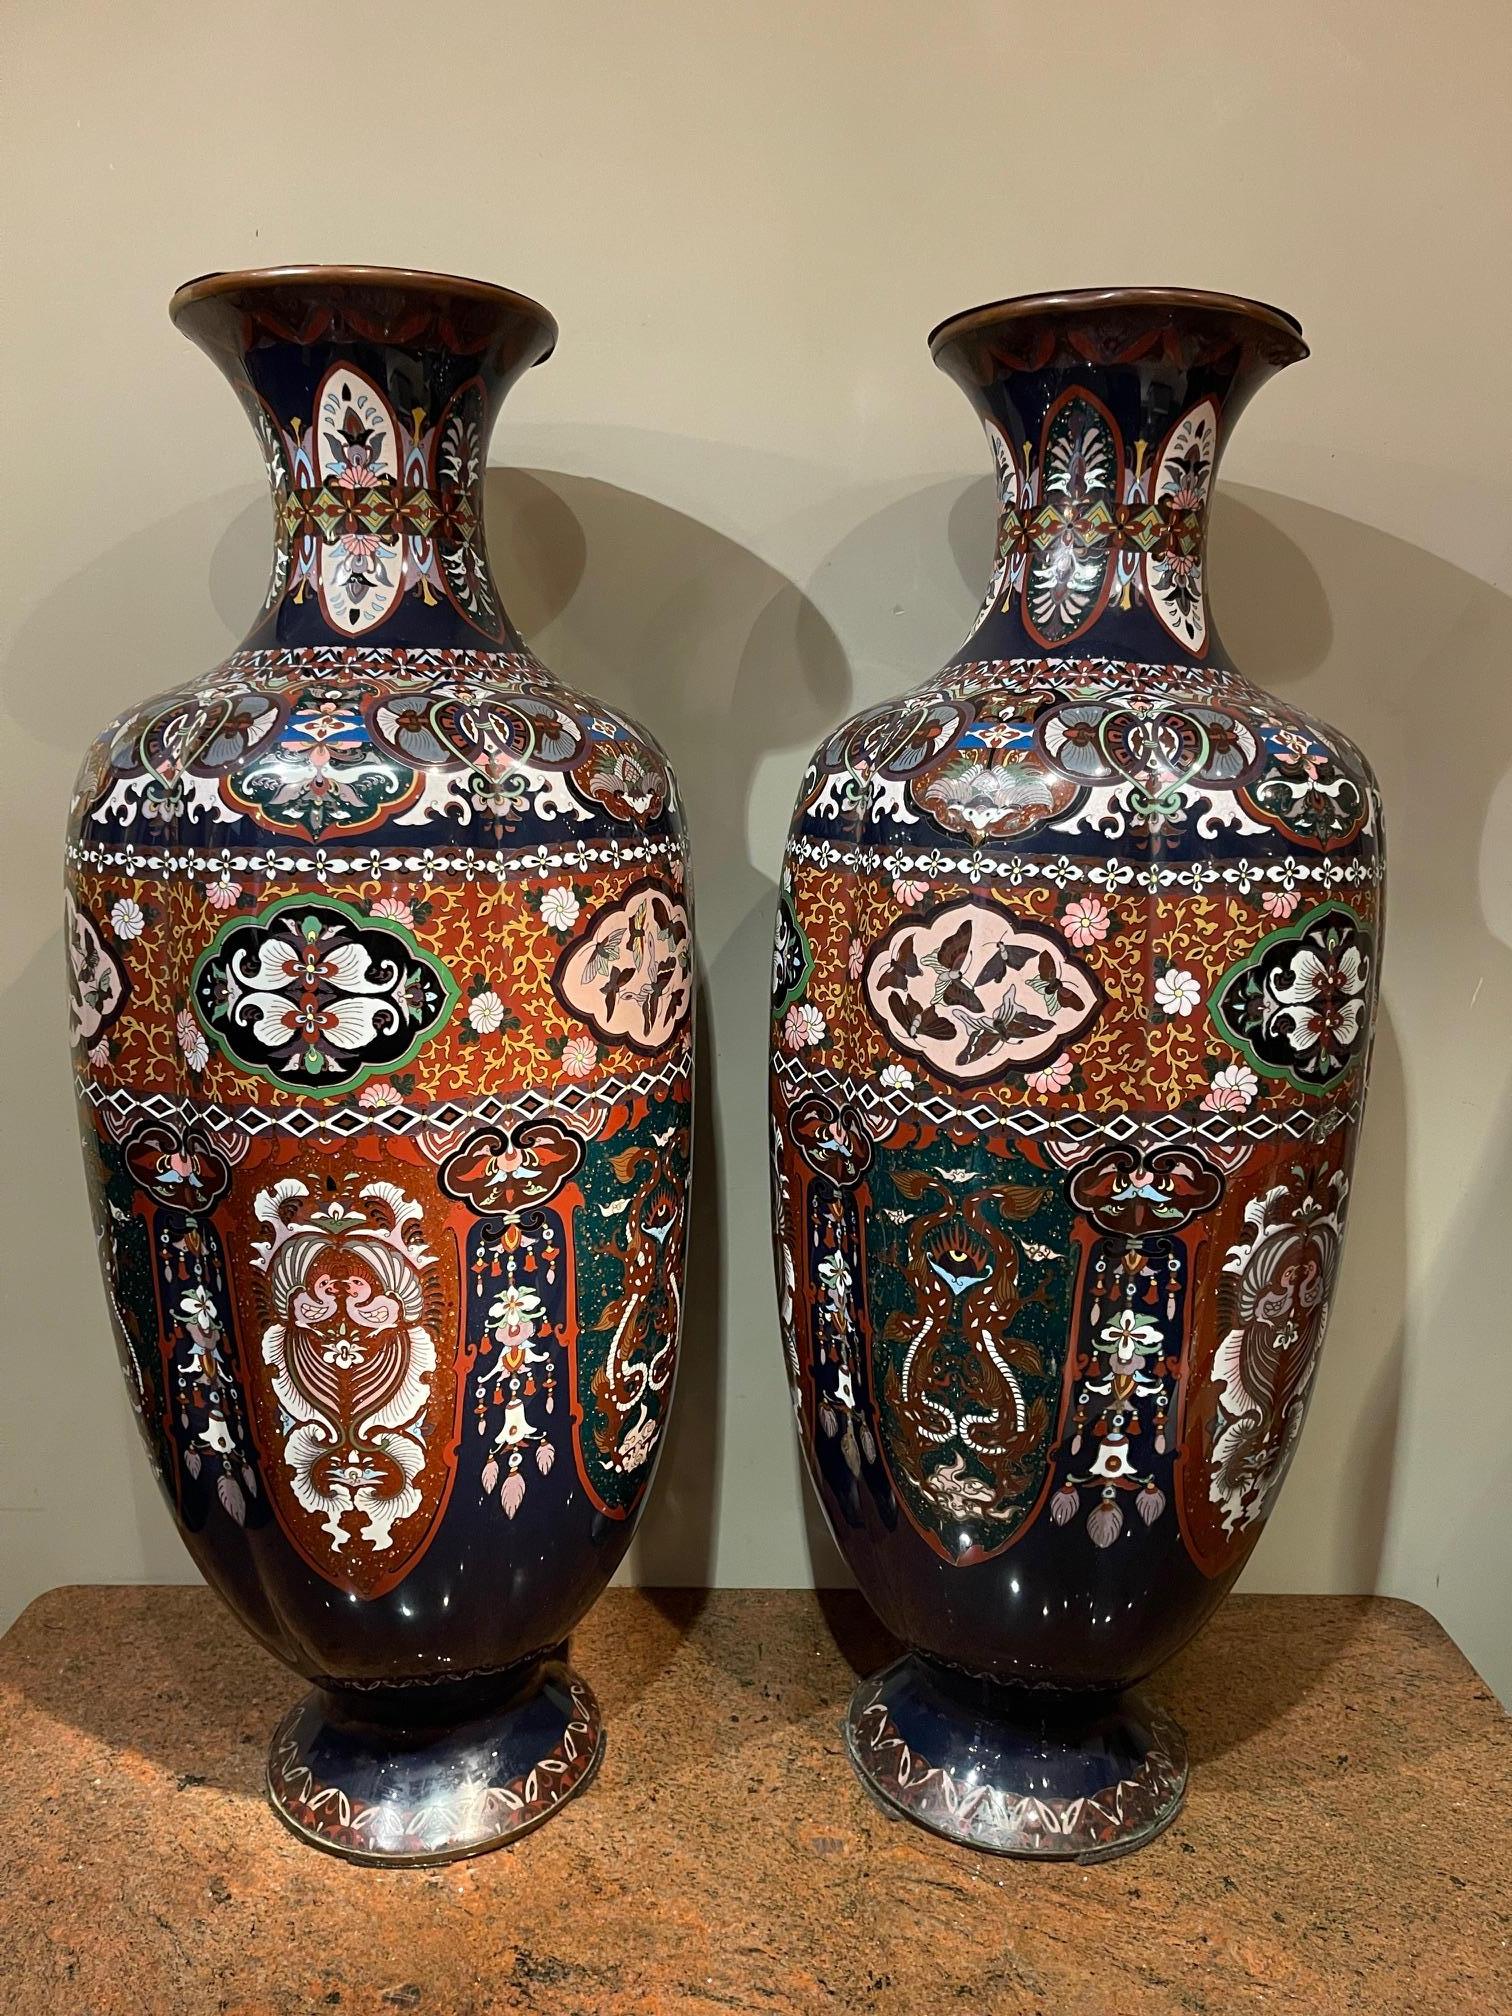 Seltenes und sehr großes Paar (0,92 m hoch) von Cloisonné-Vasen, Japan, 19.
Die 